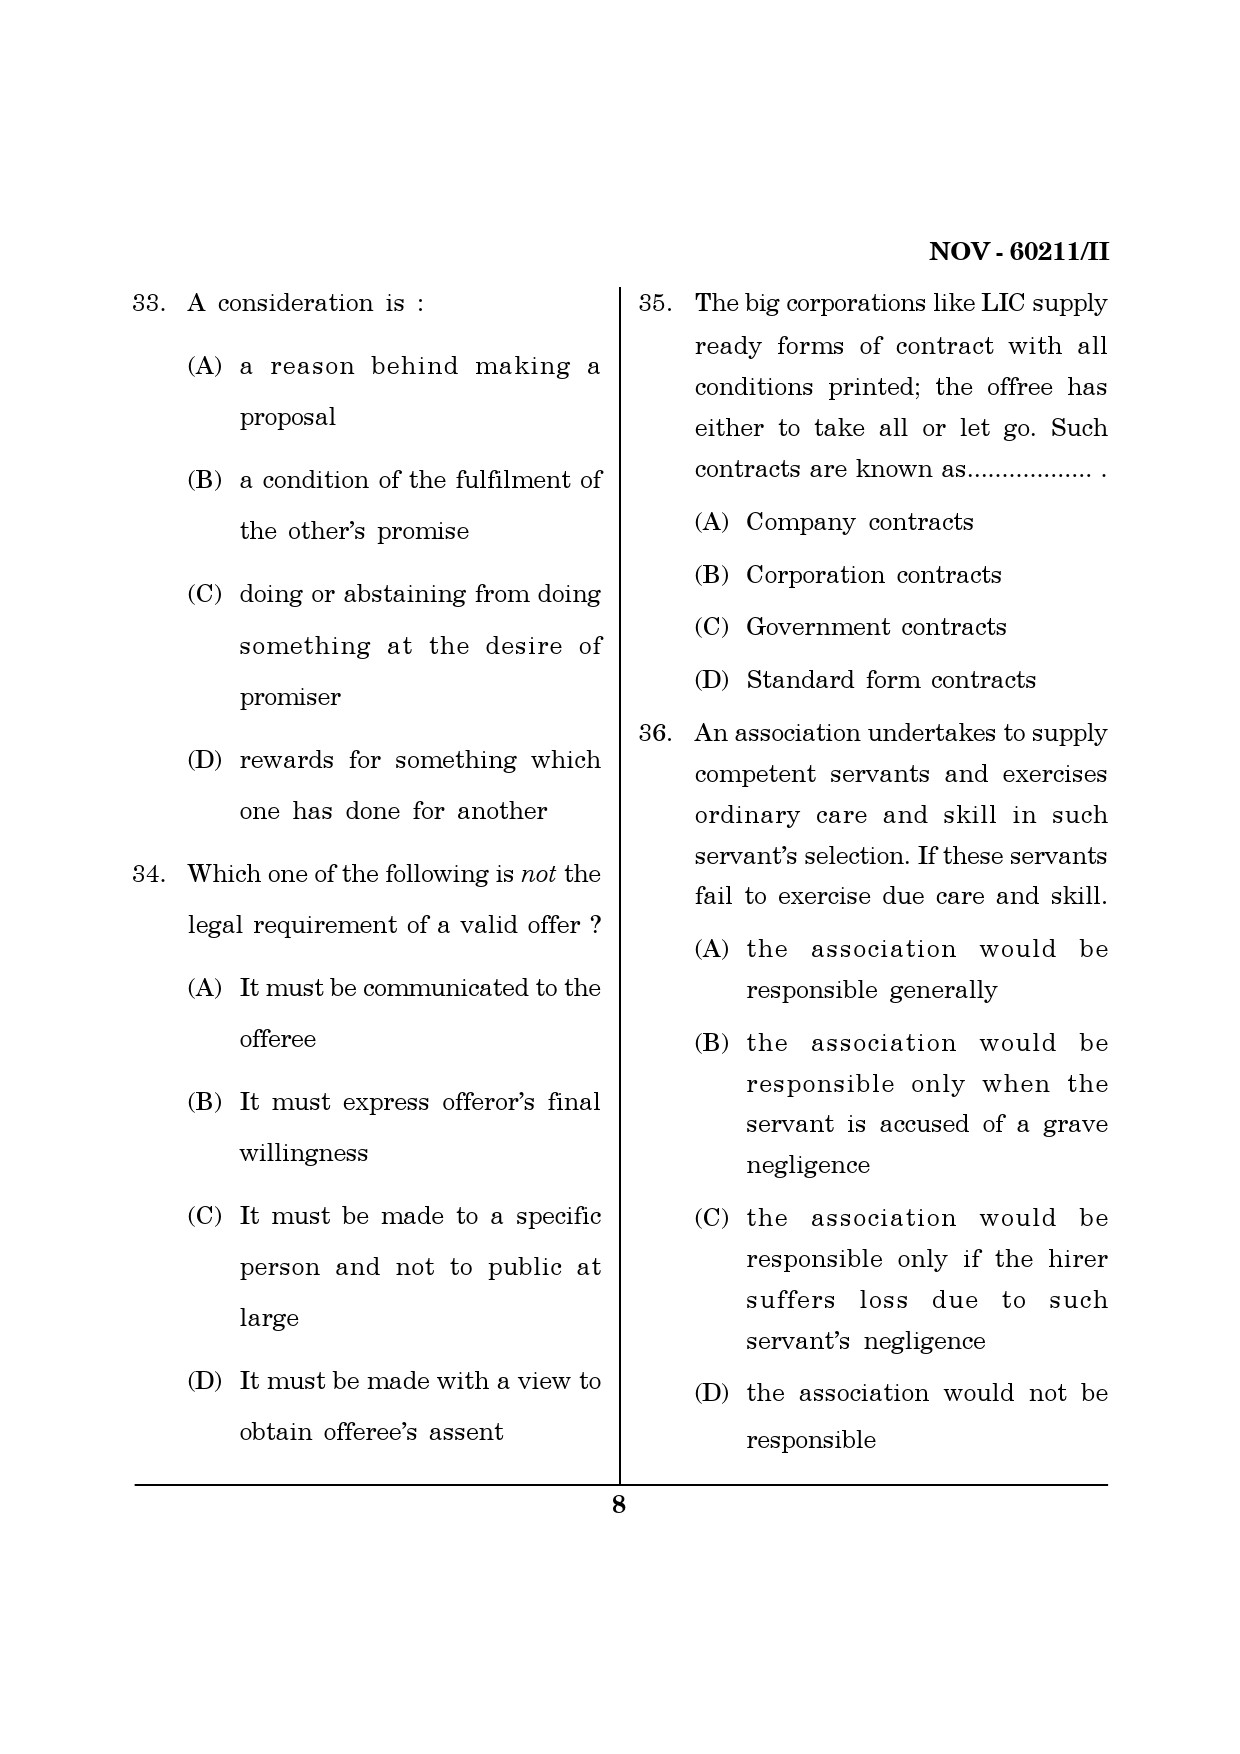 Maharashtra SET Law Question Paper II November 2011 8